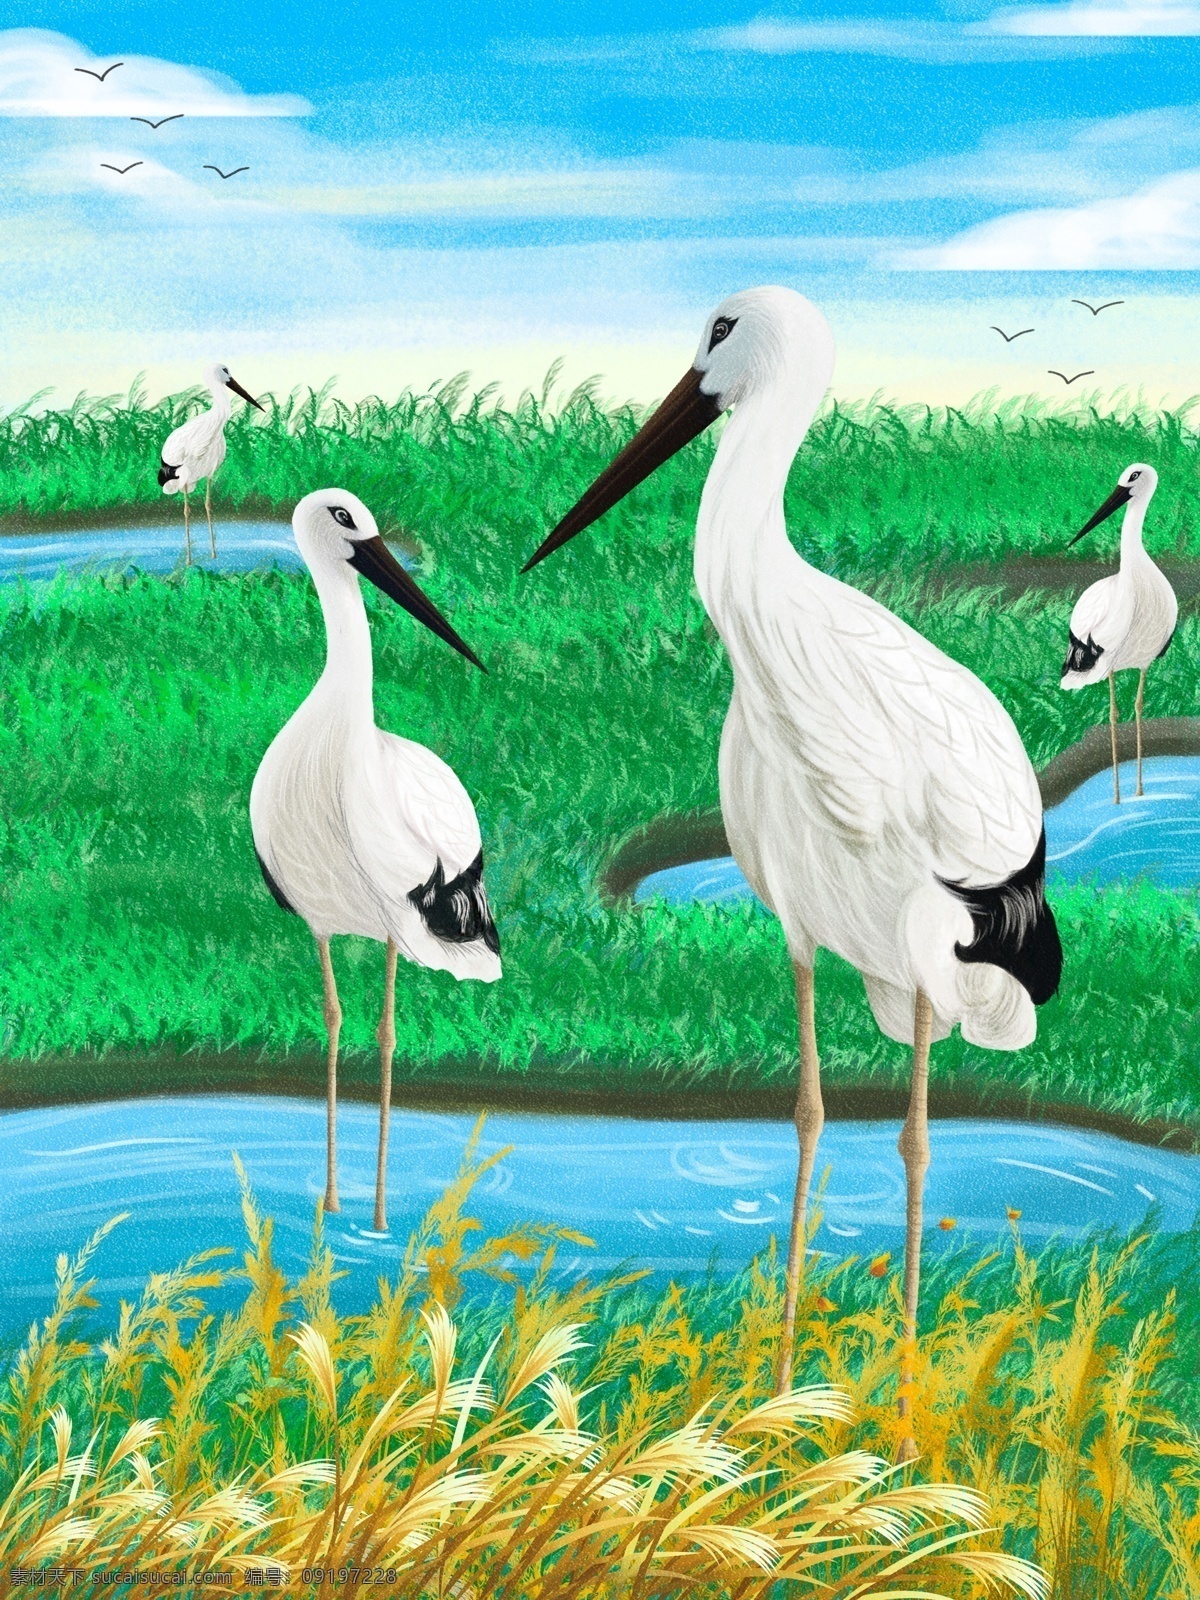 世界 湿地 日 保护 大自然 鸟类 插画 草地 鸟 植物 环保 湿地日 仙鹤 手绘 绿地 植被 禽鸟